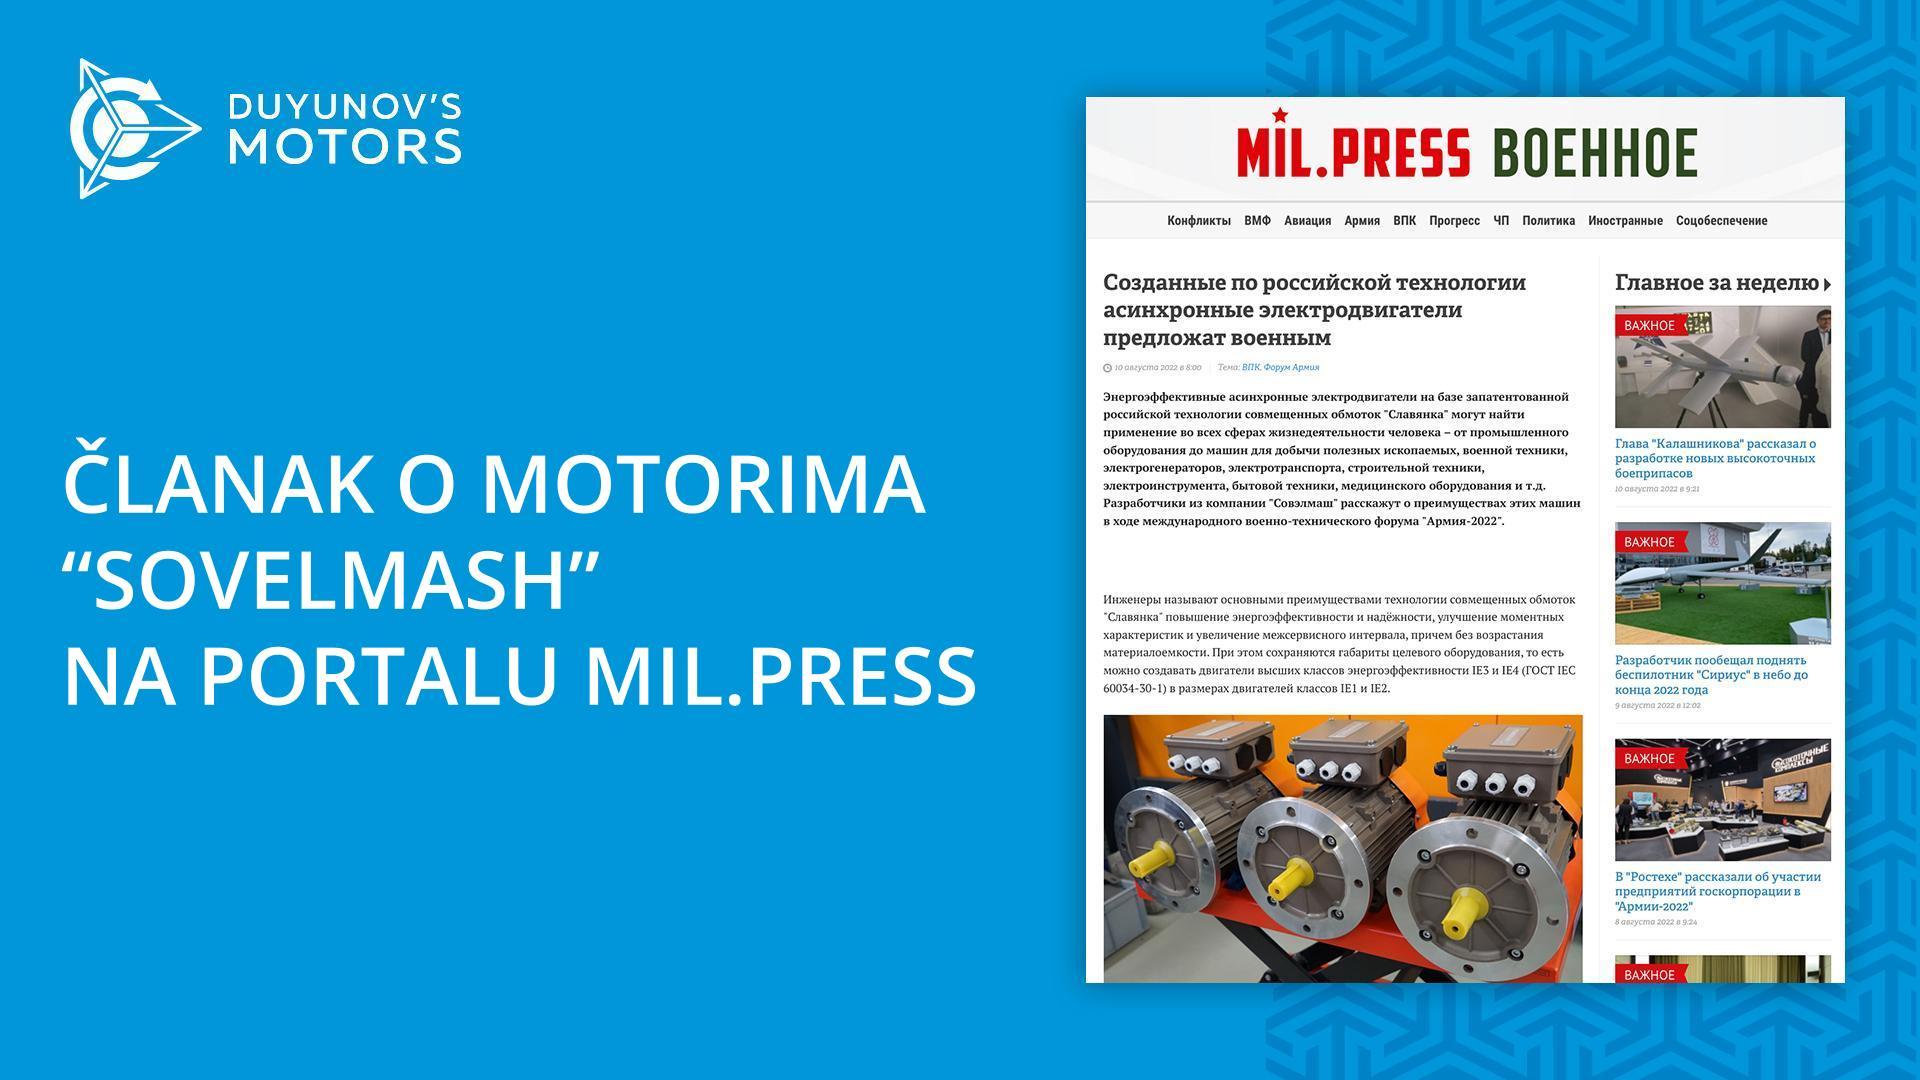 Nova publikacija o motorima "Sovelmash" u novinskoj agenciji Mil.Press